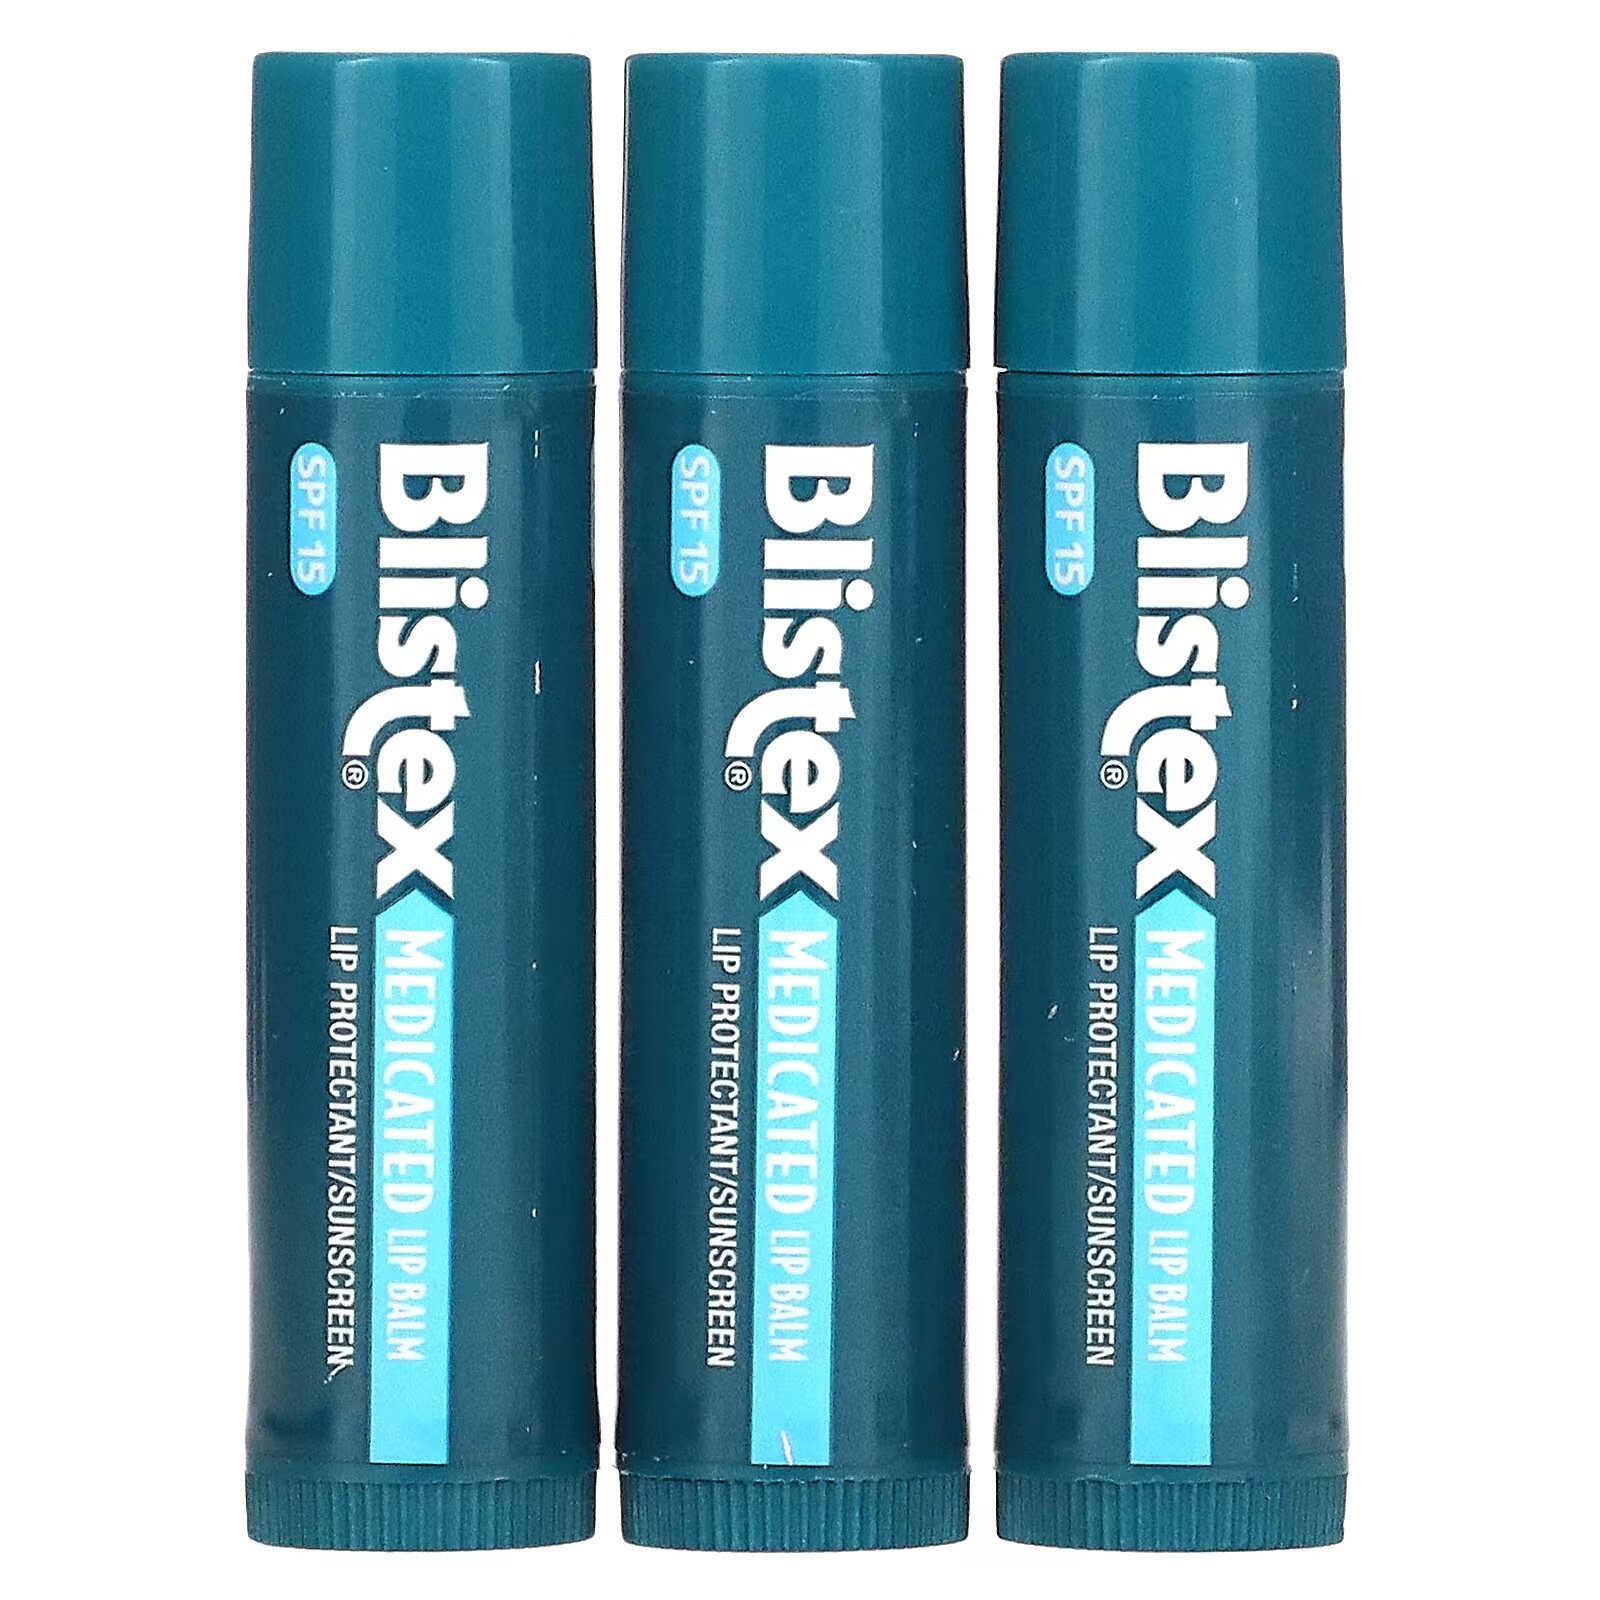 цена Заживляющий бальзам для губ Blistex с солнцезащитным фильтром SPF 15, в упаковке 3 бальзама по 4,25 г